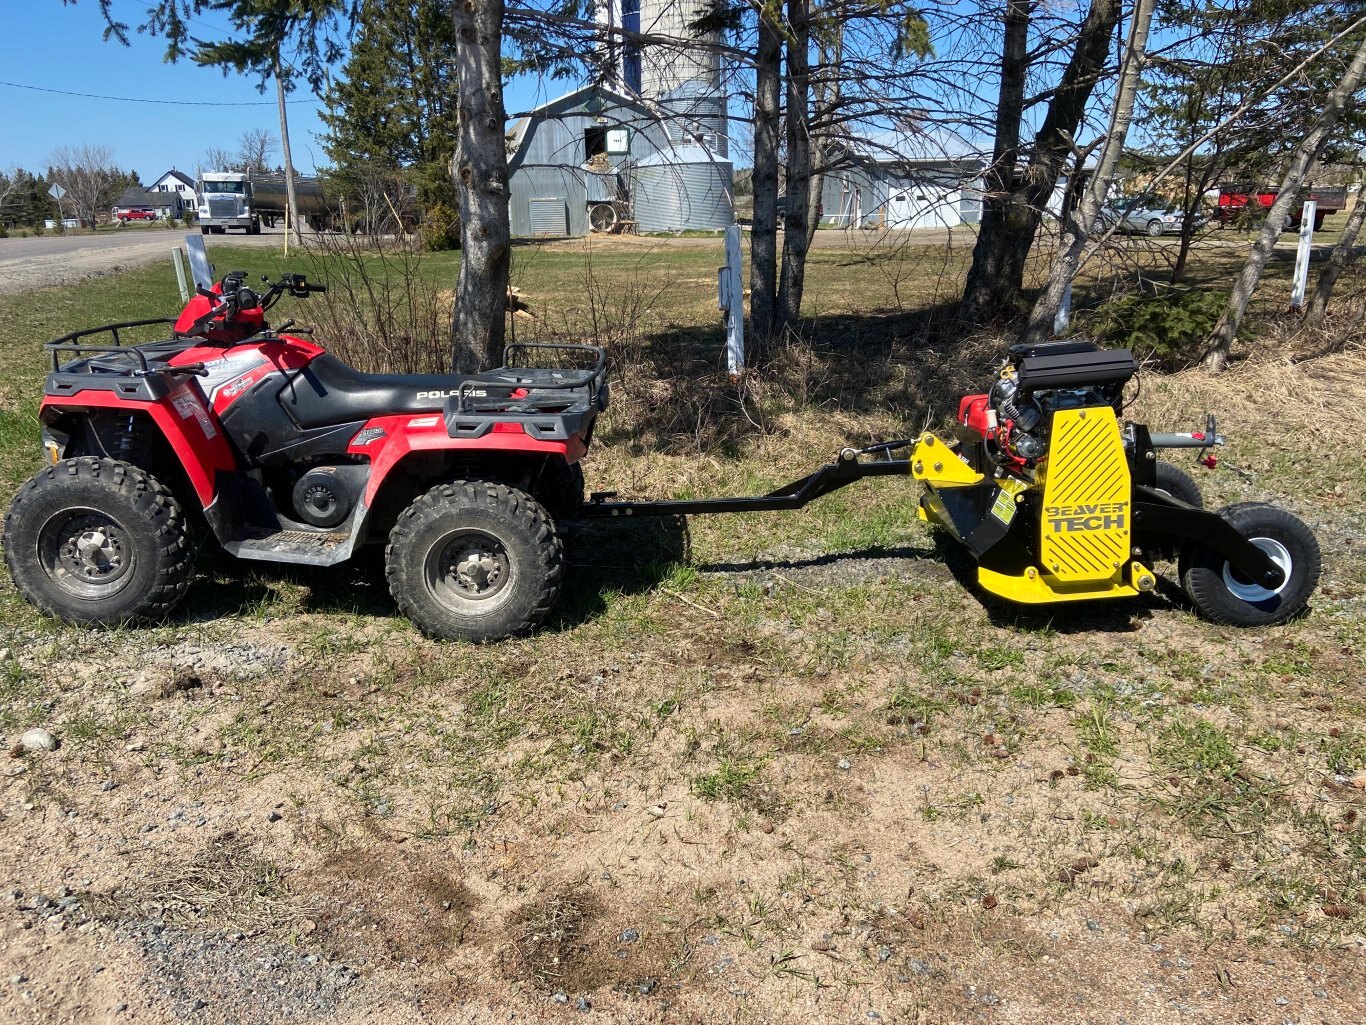 BeaverTech ATV Flail Brushcutter for grass and shrubs DEBFLVTT